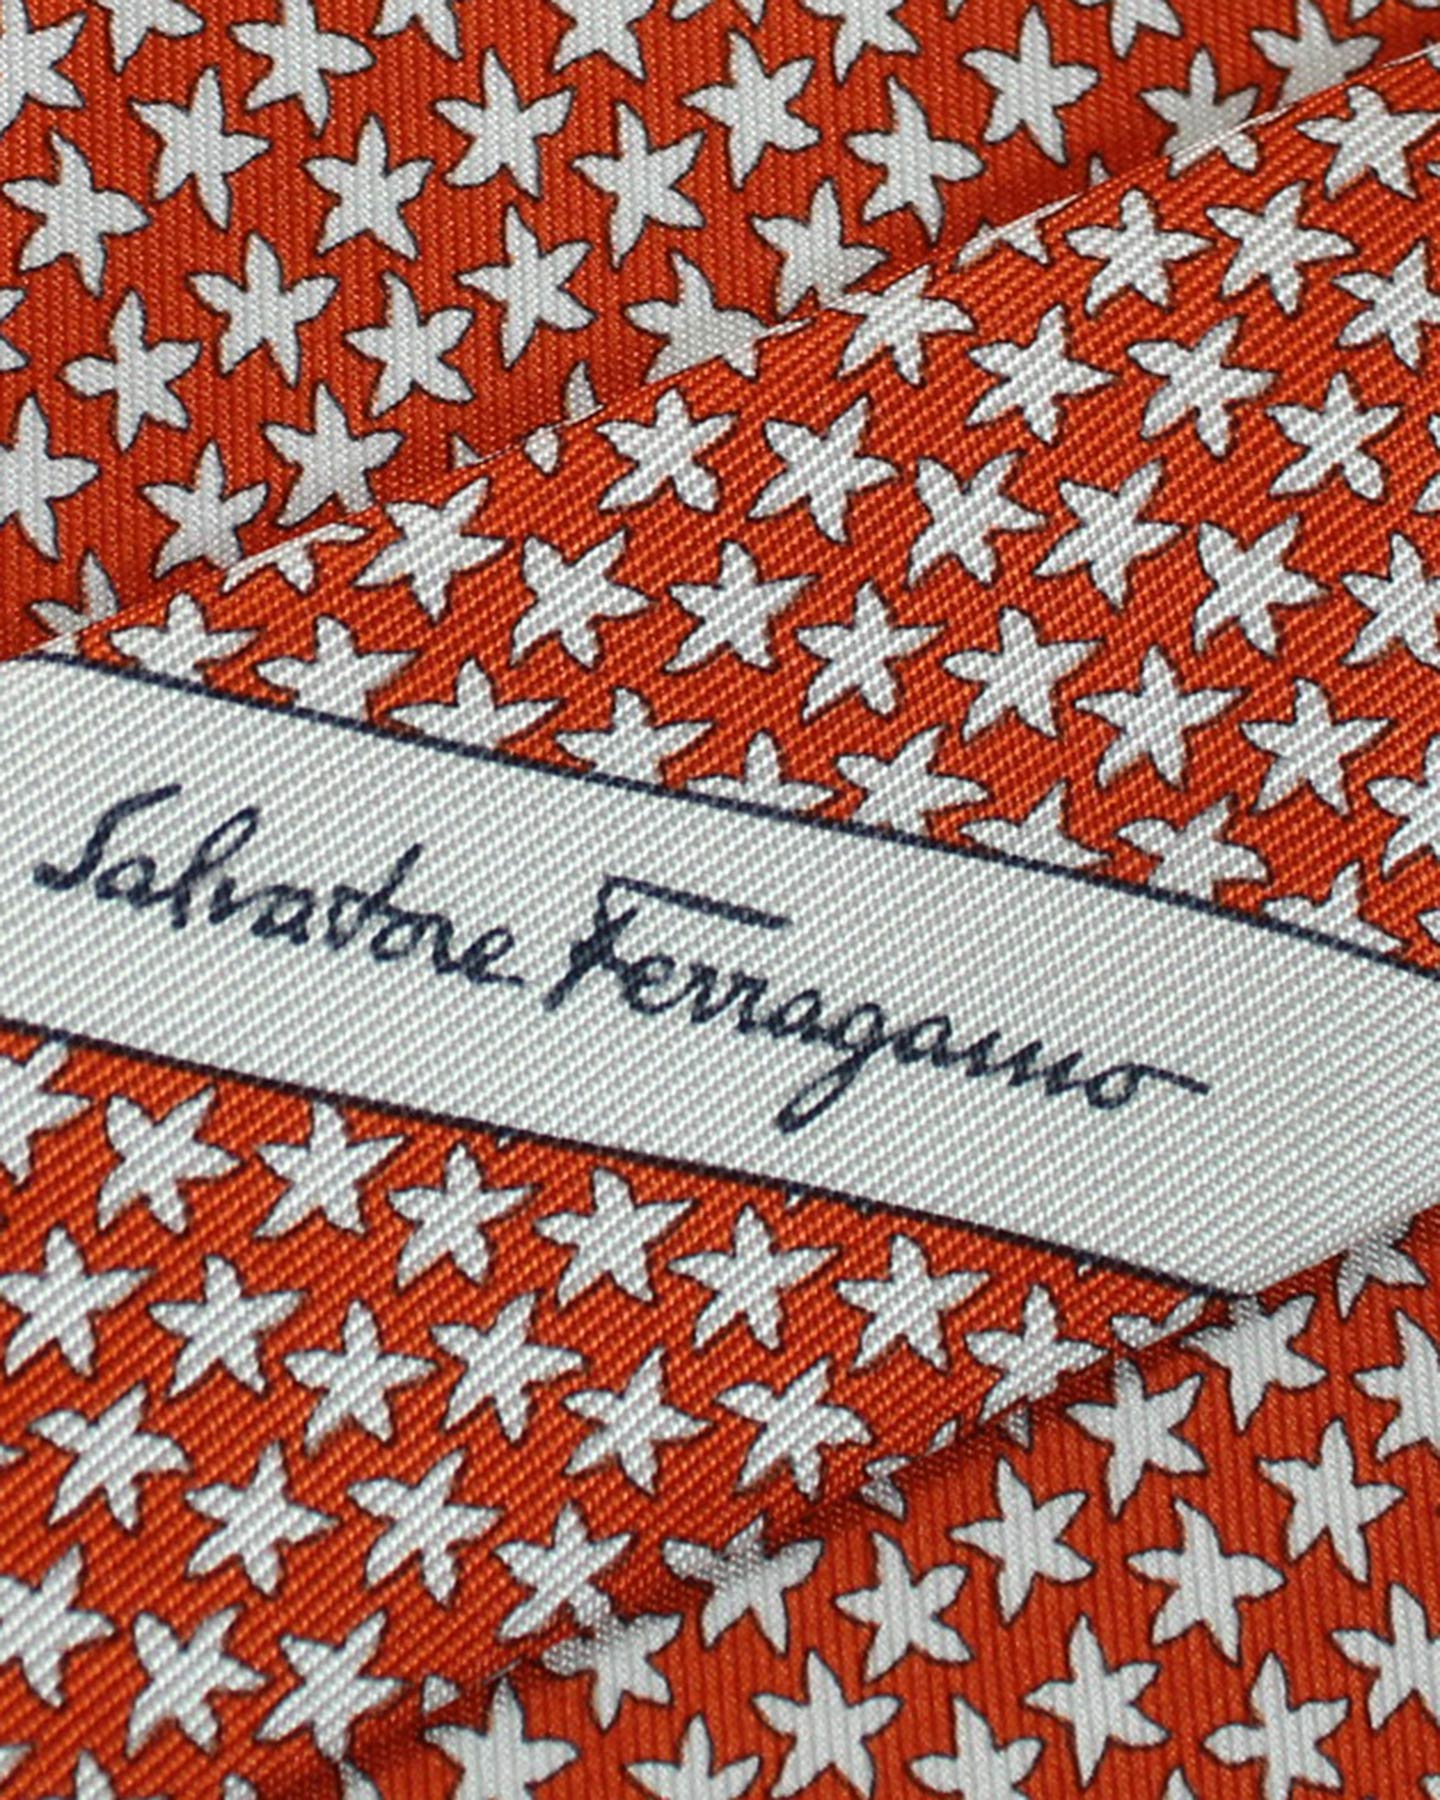 Salvatore Ferragamo Tie Orange Starfish - Novelty Necktie